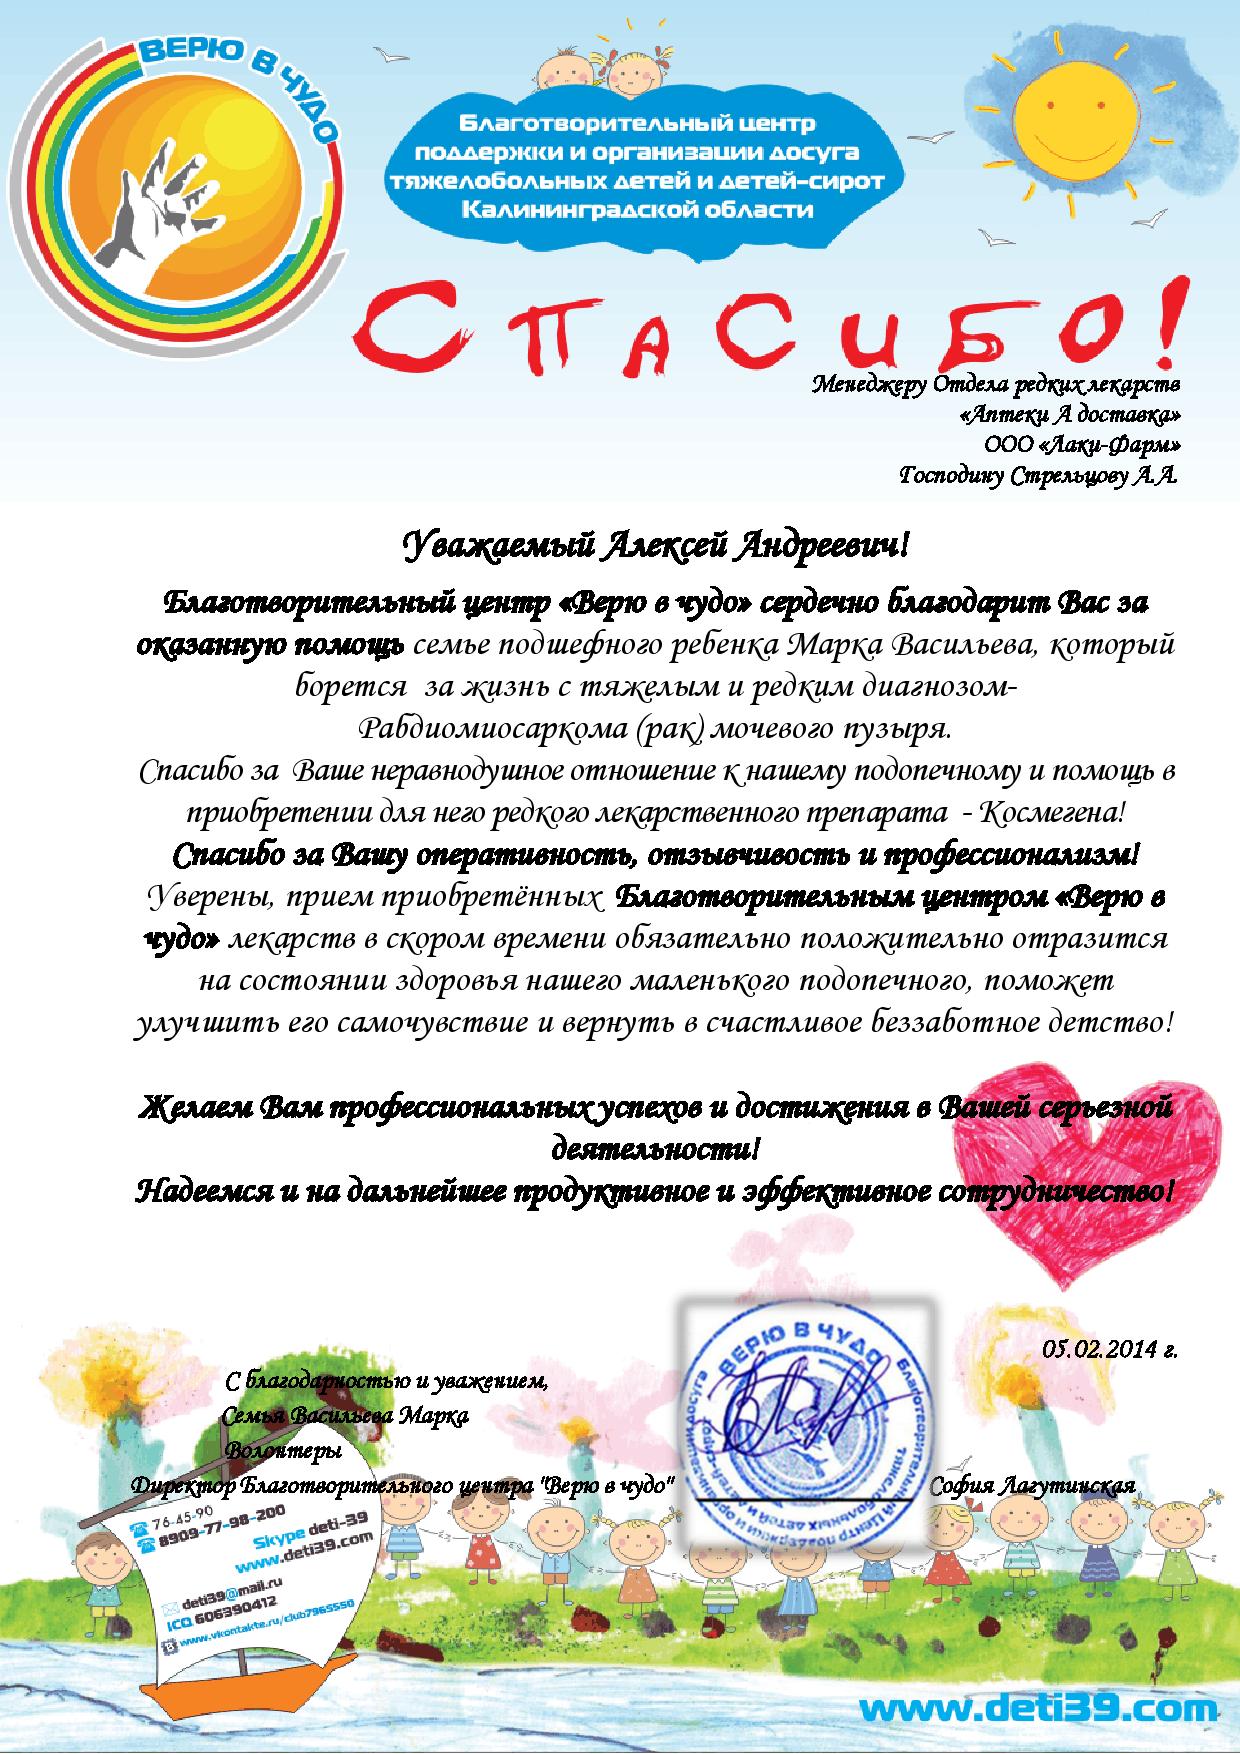 Благотворительный центр поддержки и организации досуга тяжелобольных детей и детей-сирот Калининградской области "Верю в чудо"